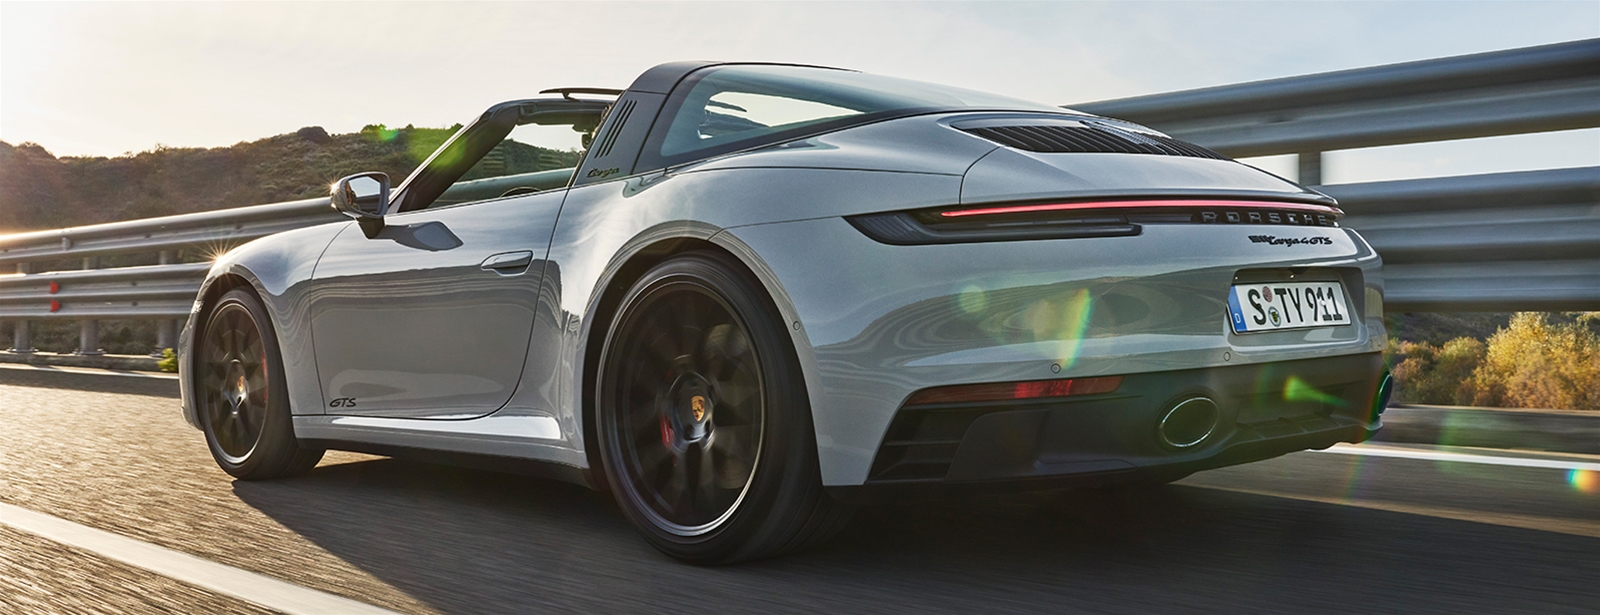 More of what you love. - De nieuwe Porsche 911 GTS-modellen.